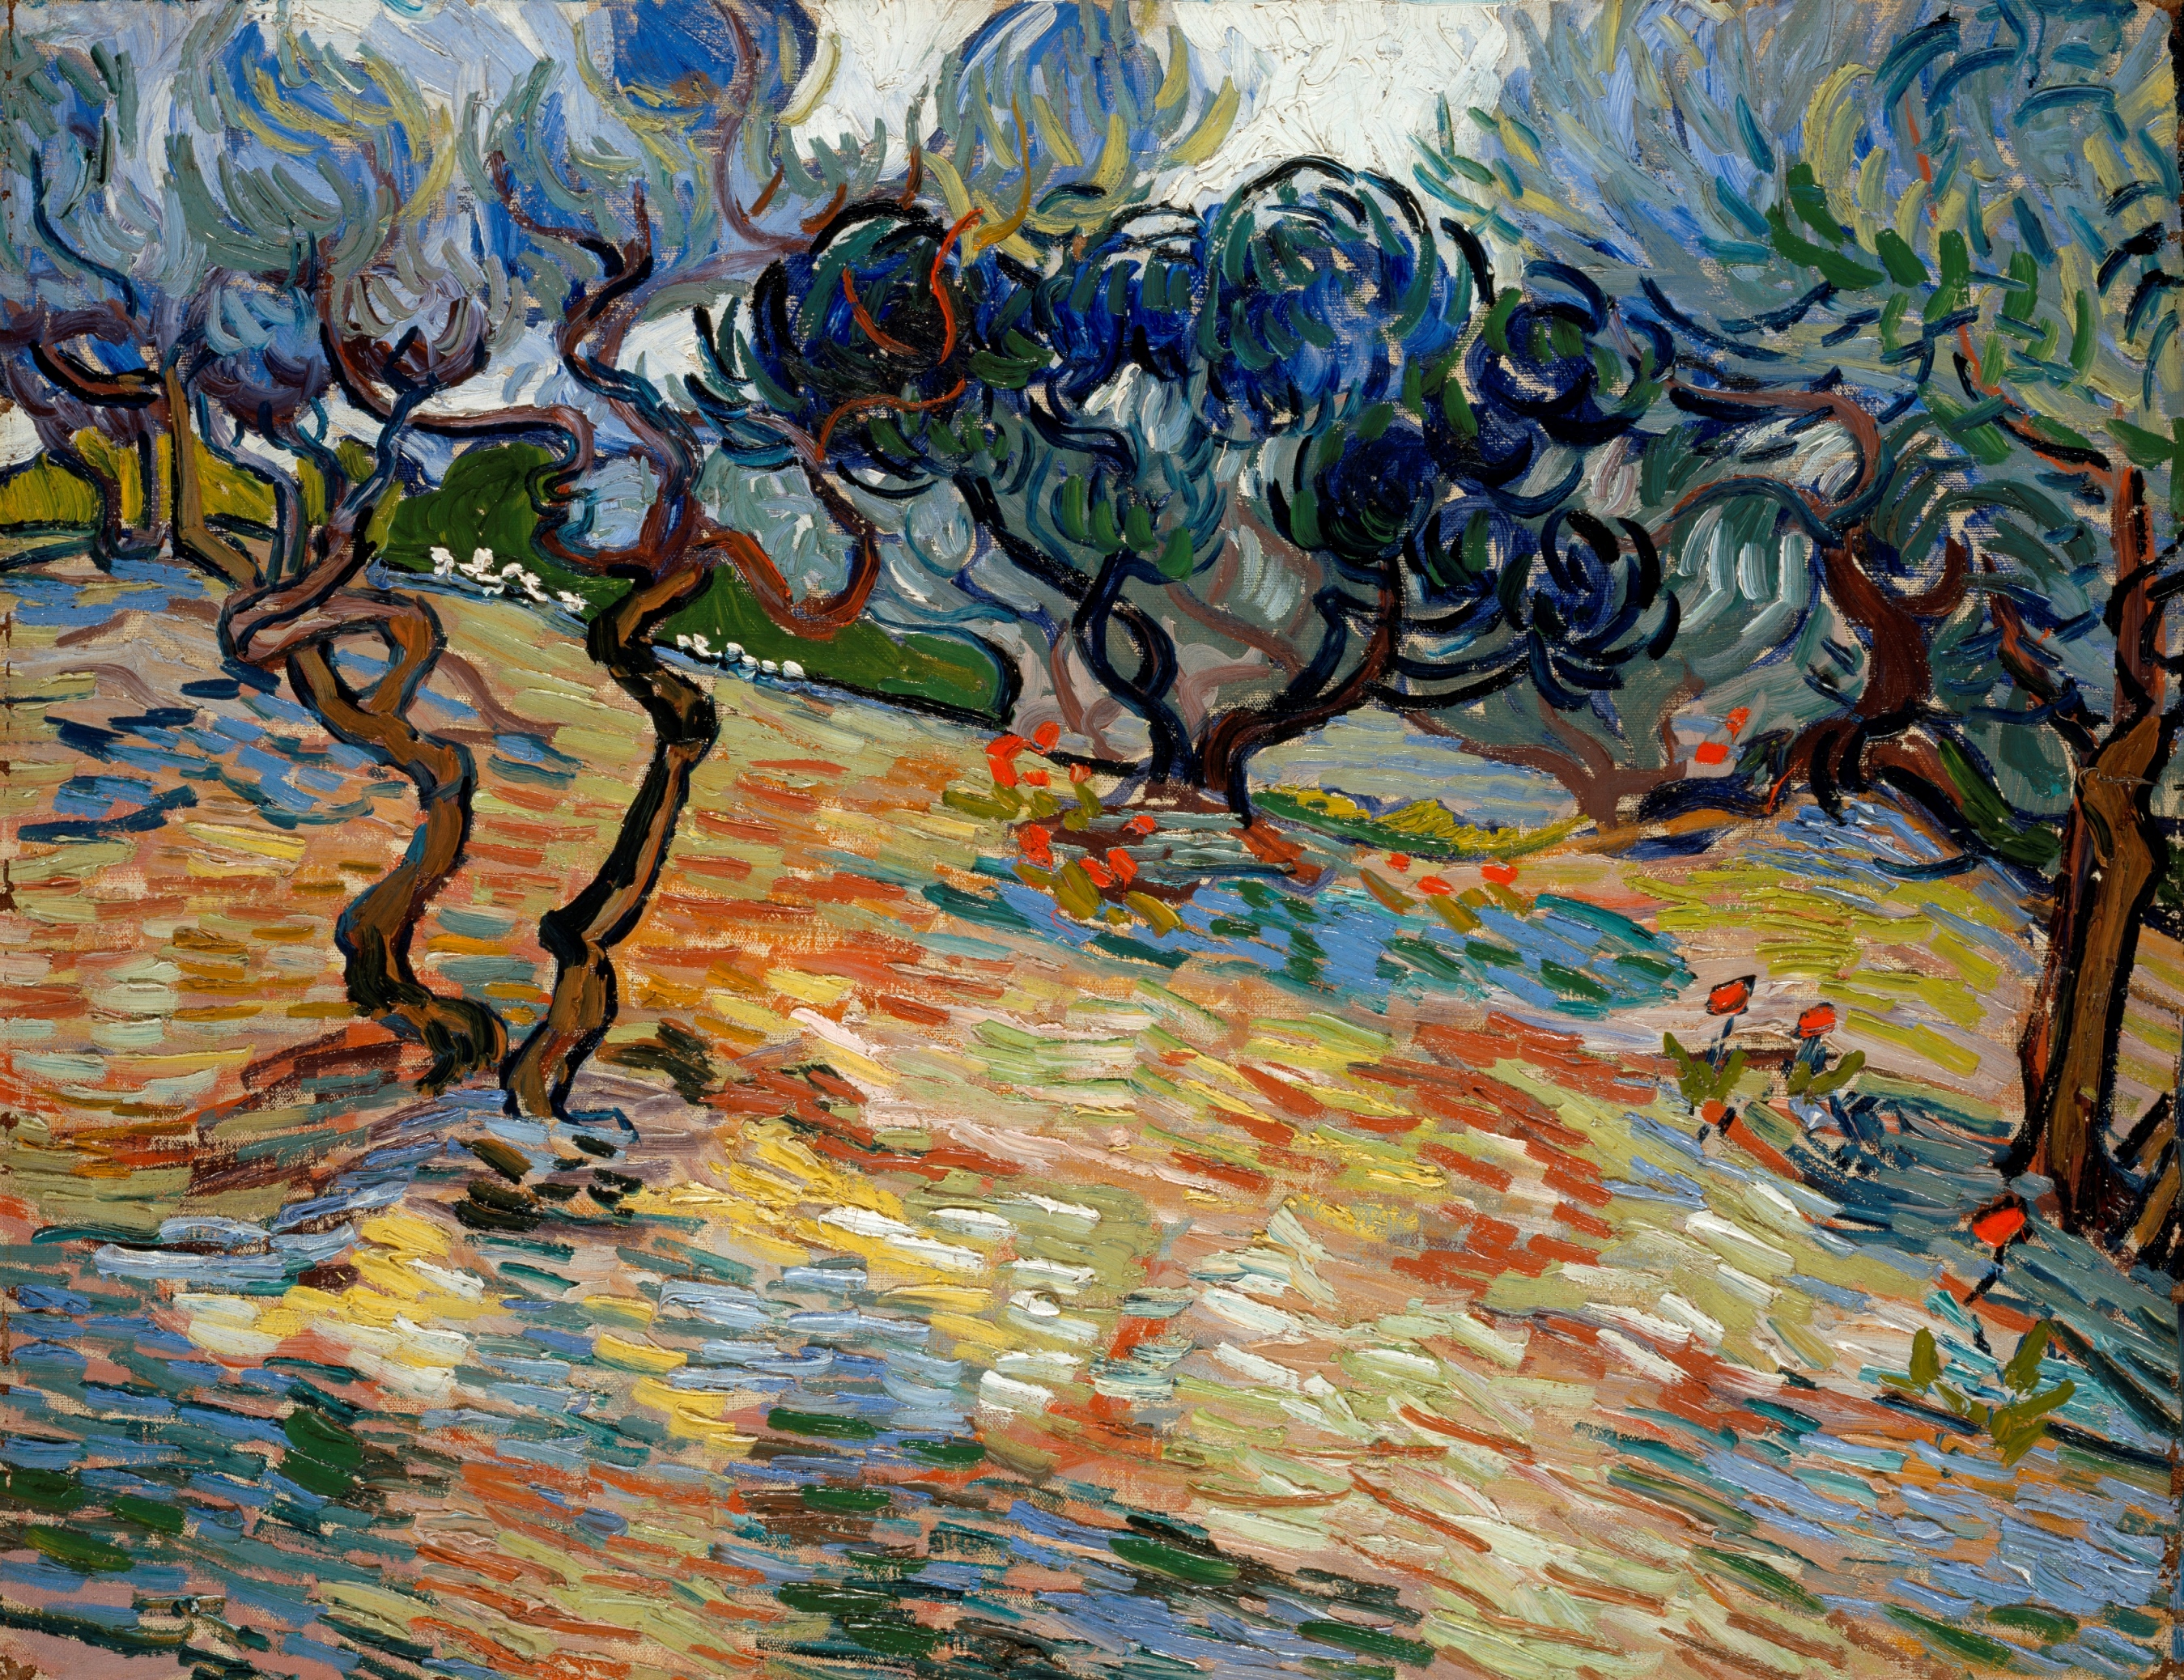 Zeytin Ağaçları by Vincent van Gogh - 1889 